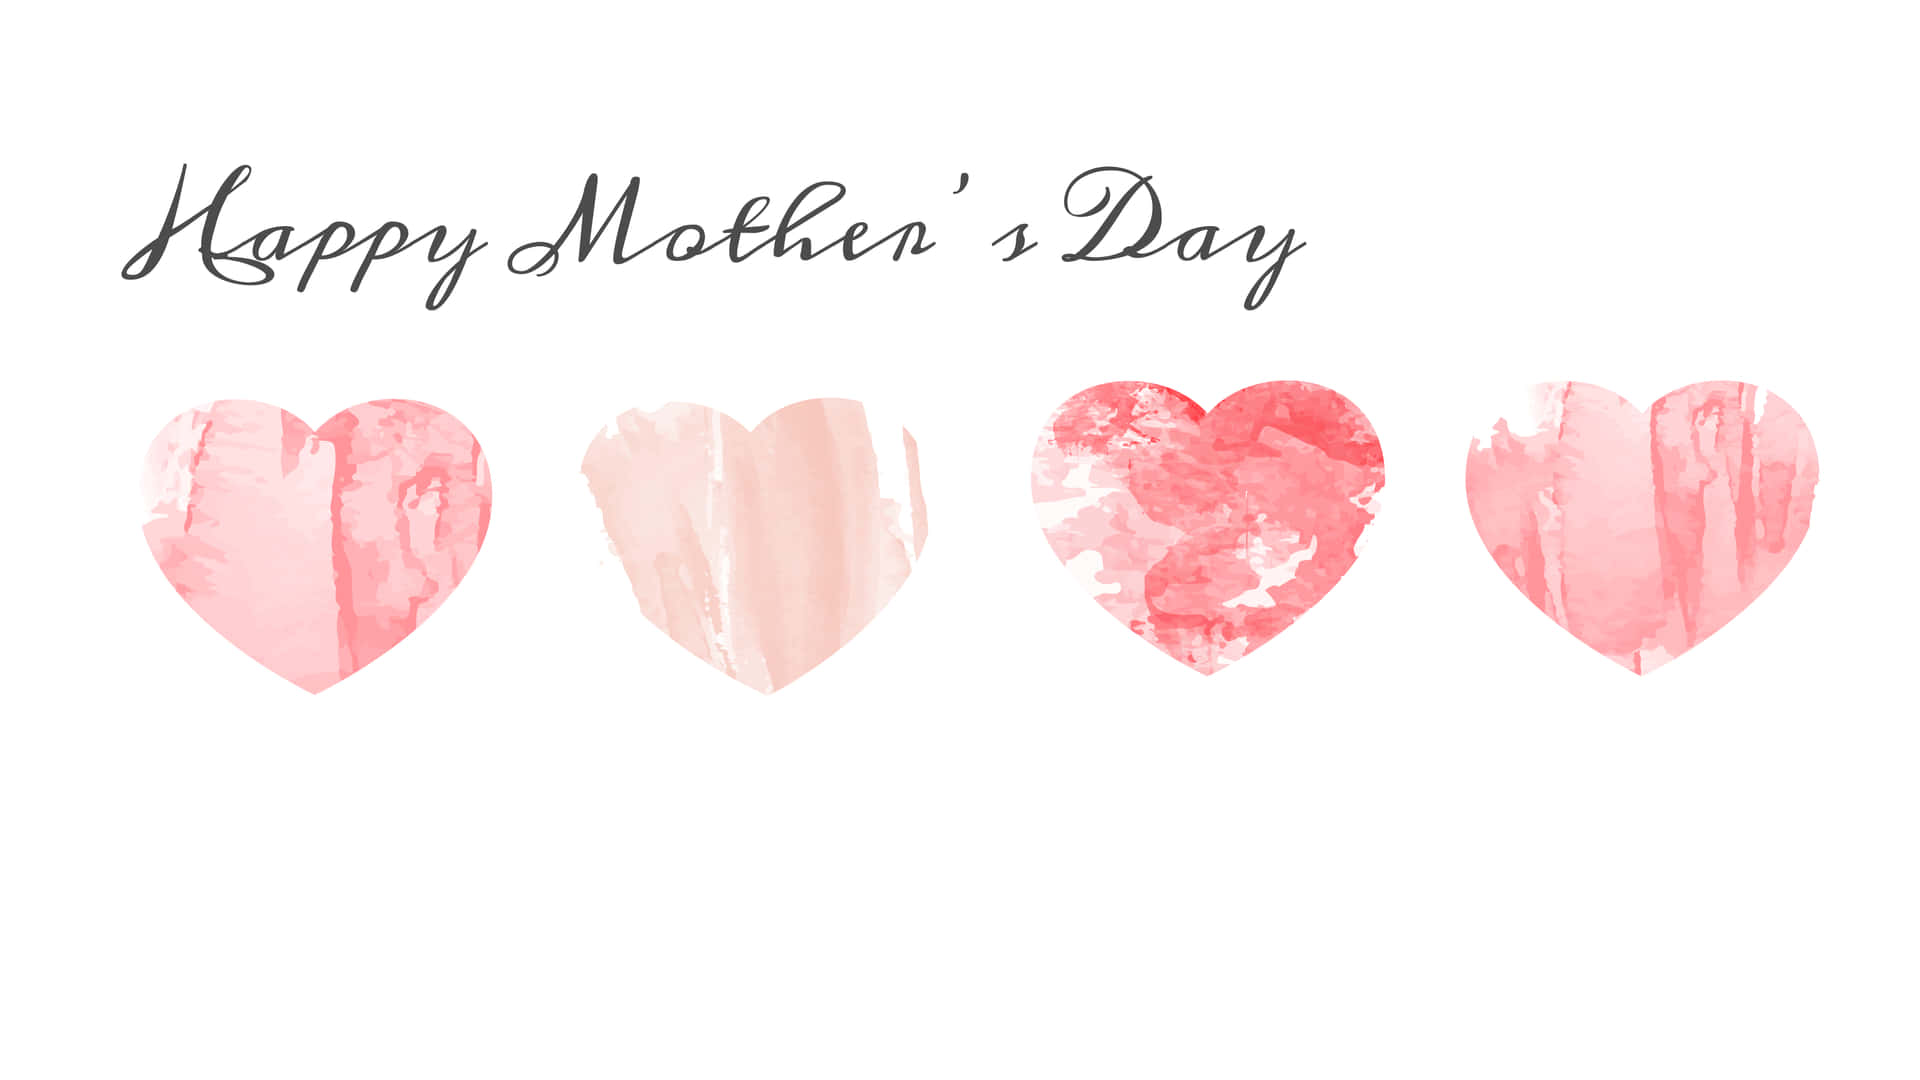 Comparteel Amor En Este Día De La Madre.